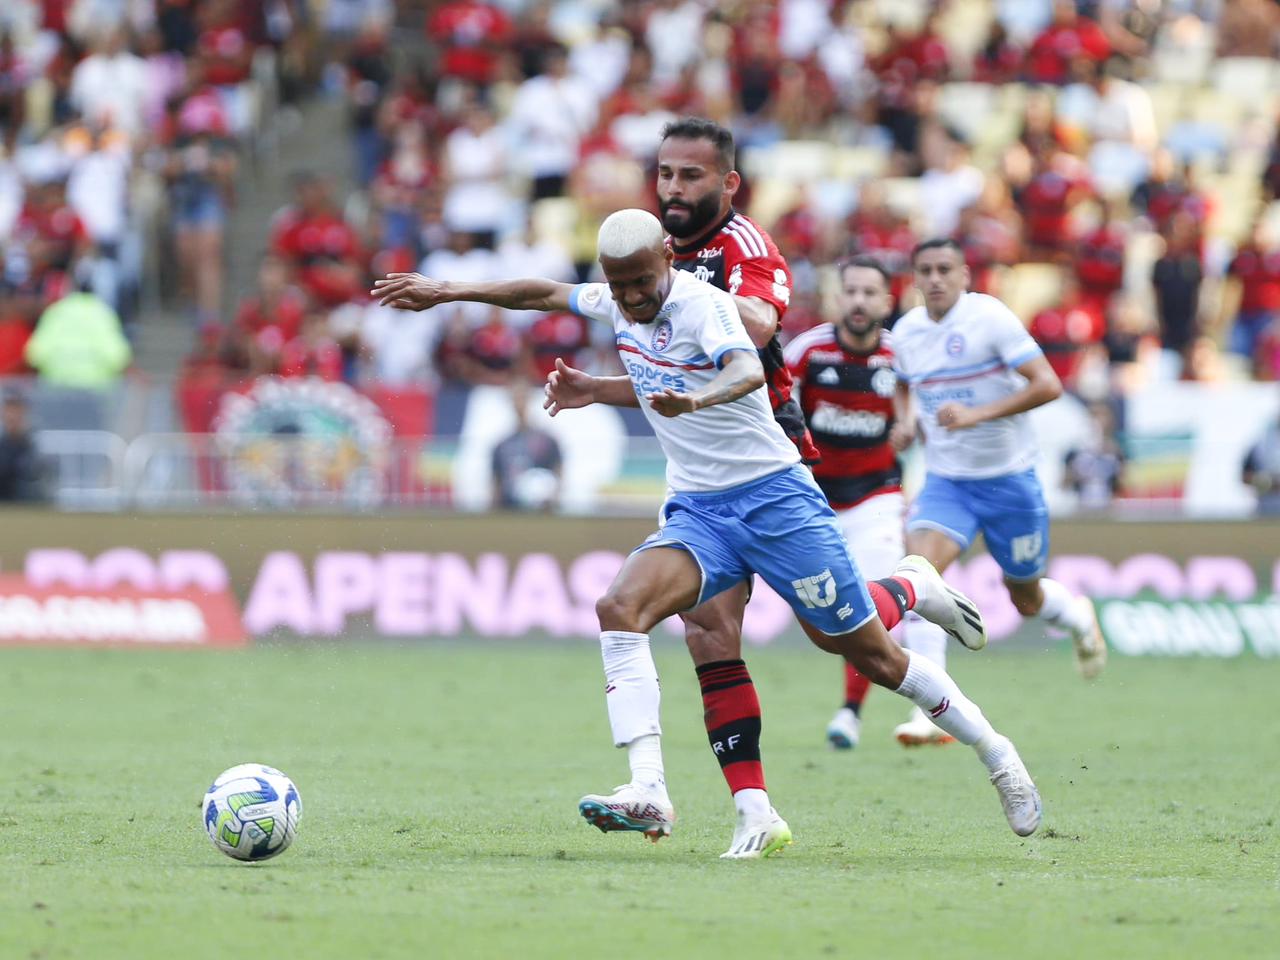 Com pênalti polêmico, Bahia perde para o Flamengo no Maracanã